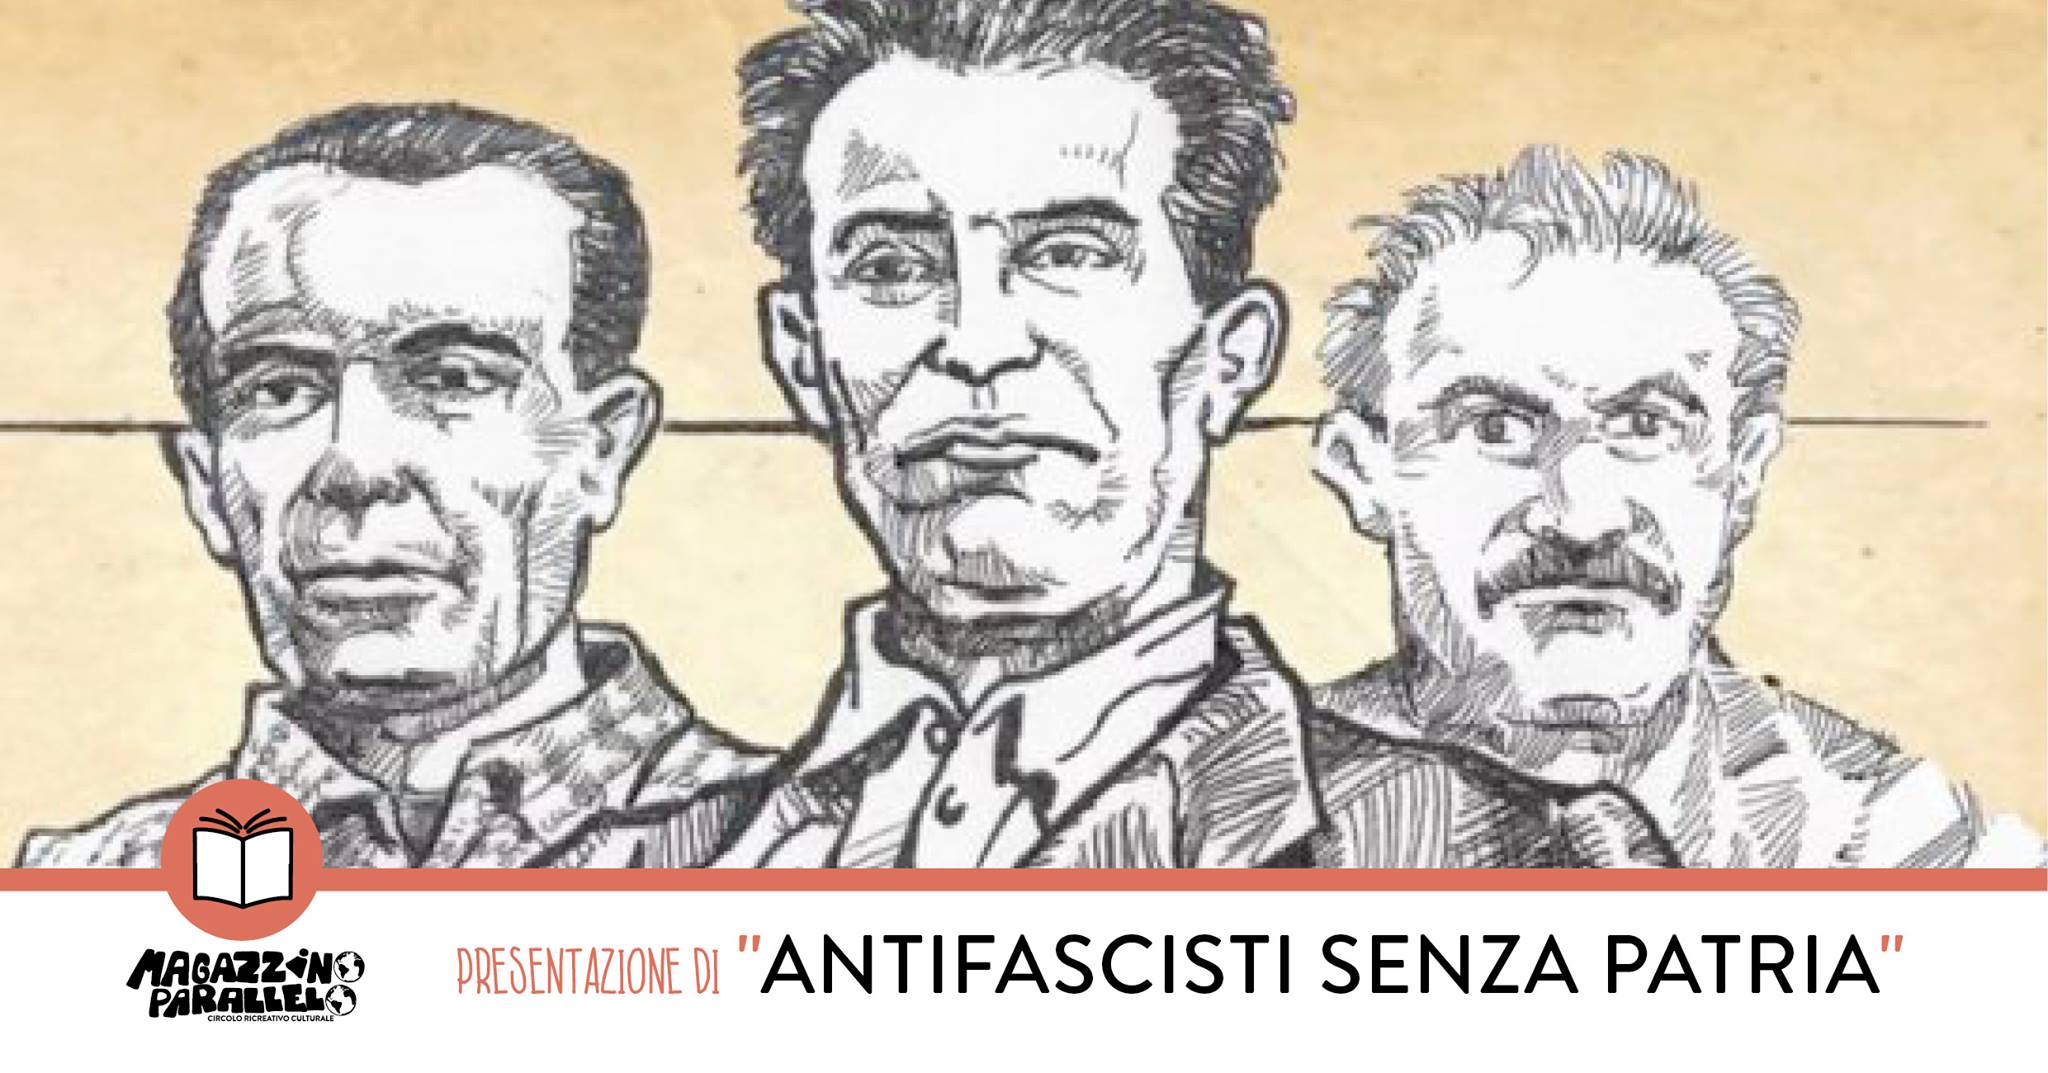 Antifascisti Senza Patria ⌁ at Magazzino Parallelo